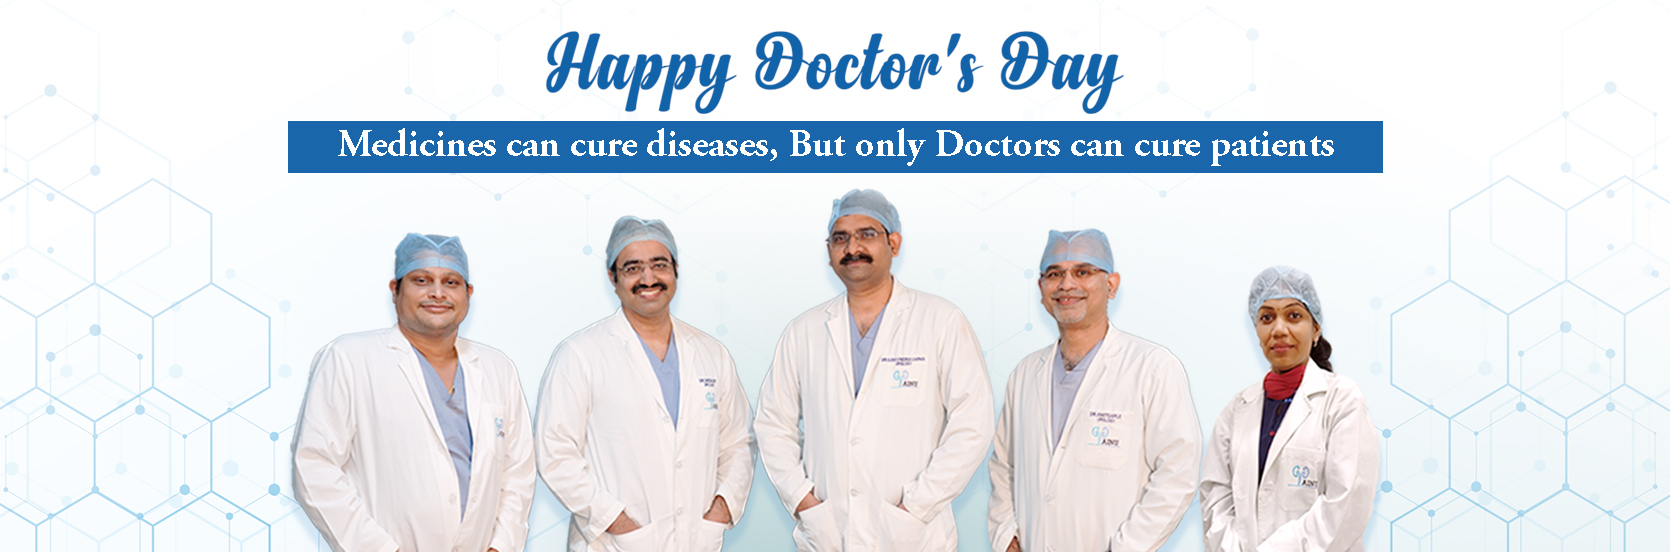 Happy doctors day